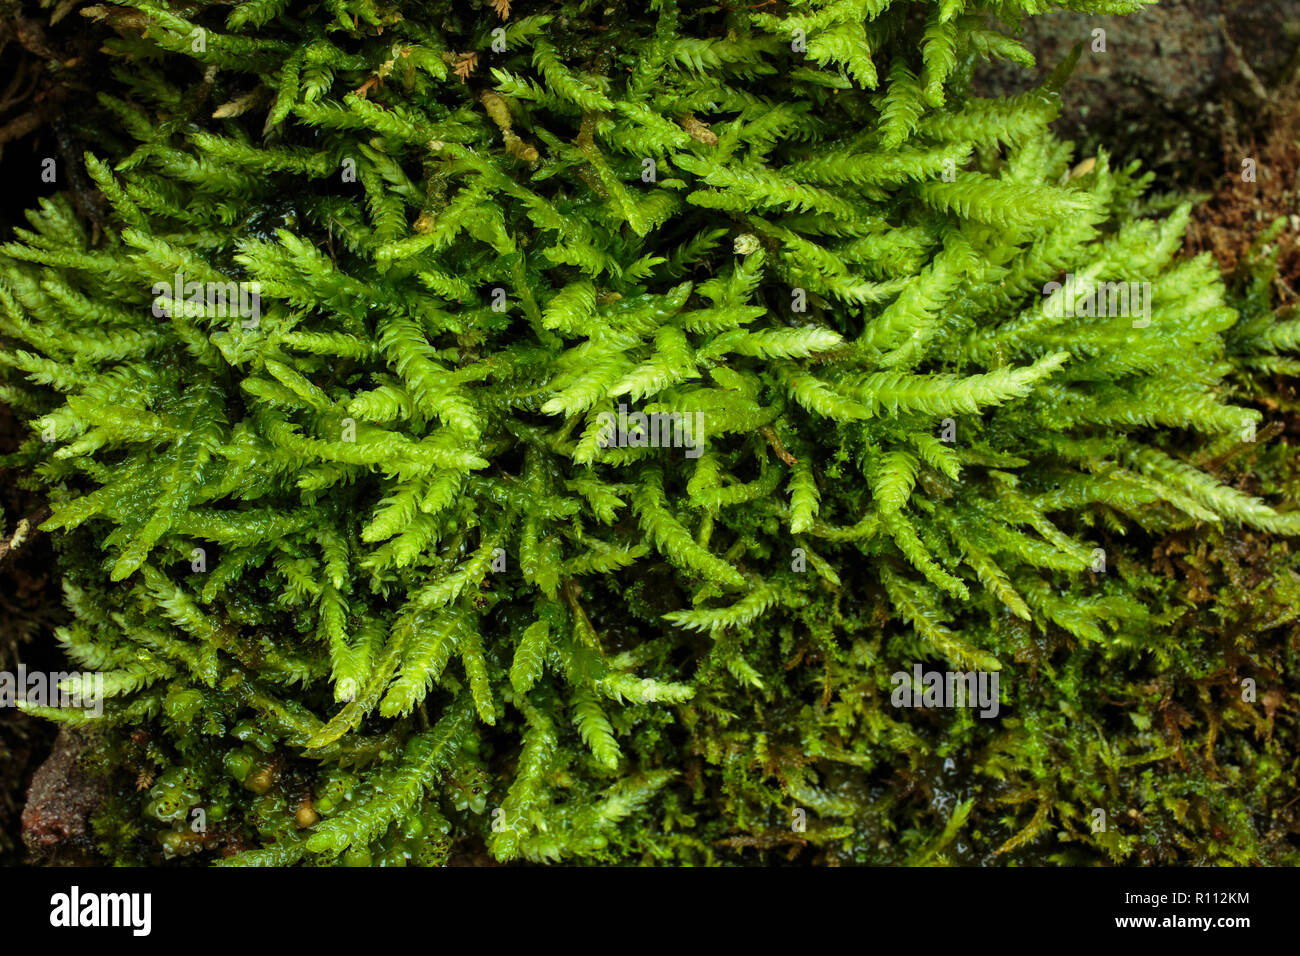 Undulate Plagiothecium Moss, Plagiothecium undulatum Stock Photo